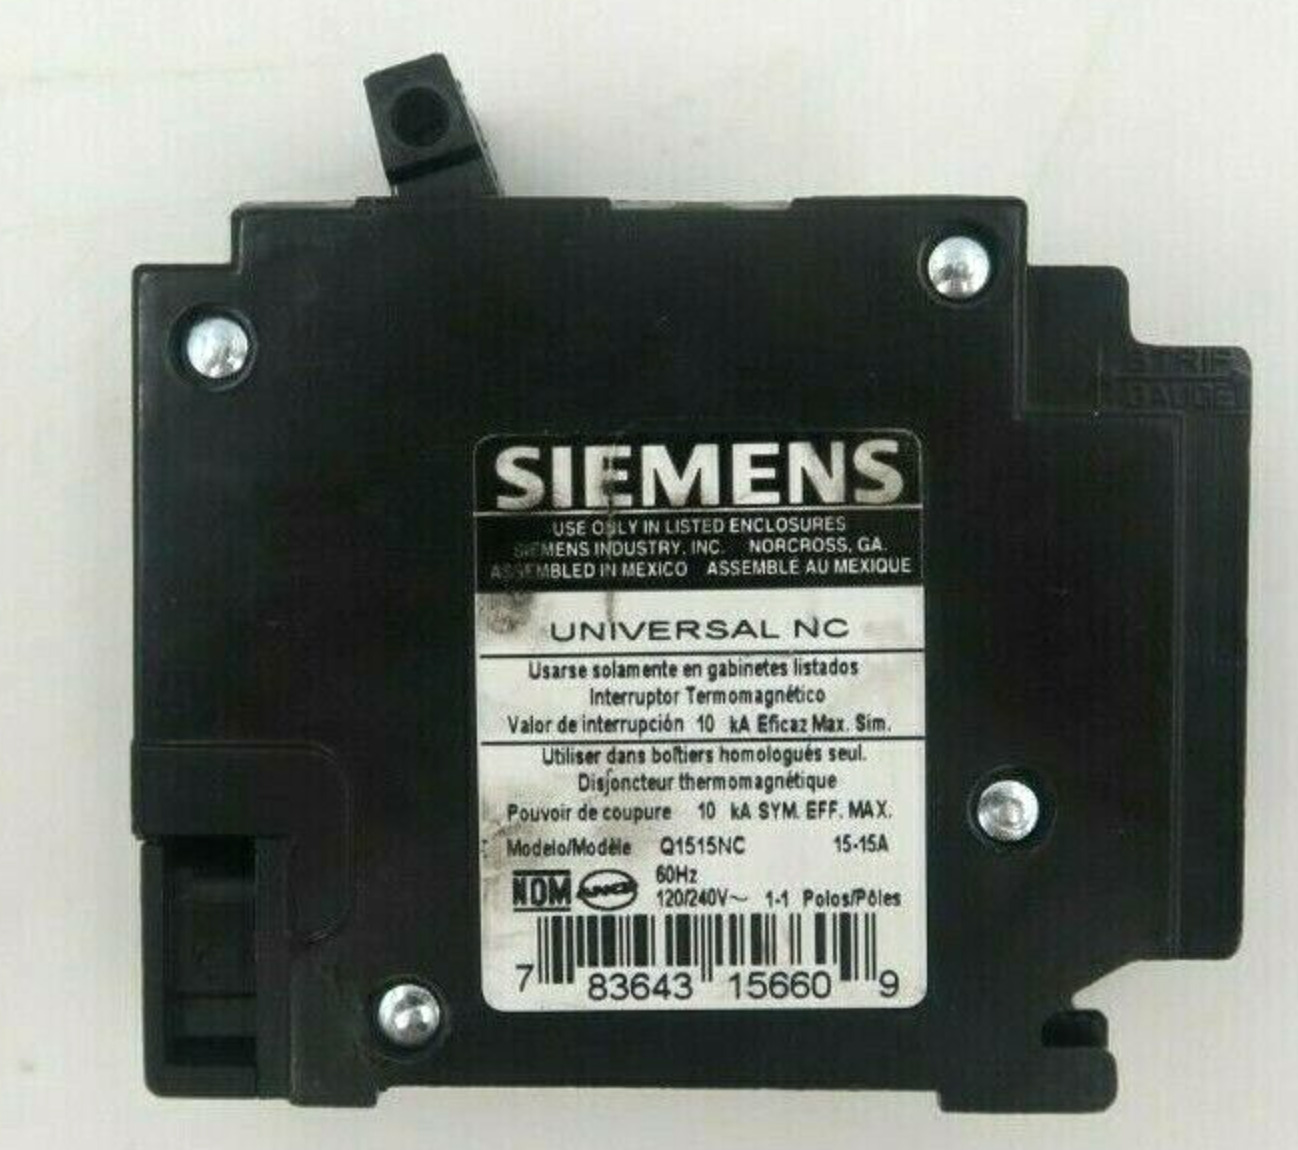 Q1515NC Siemens 15 Amp Twin Duplex 120/240V Circuit Breaker  New